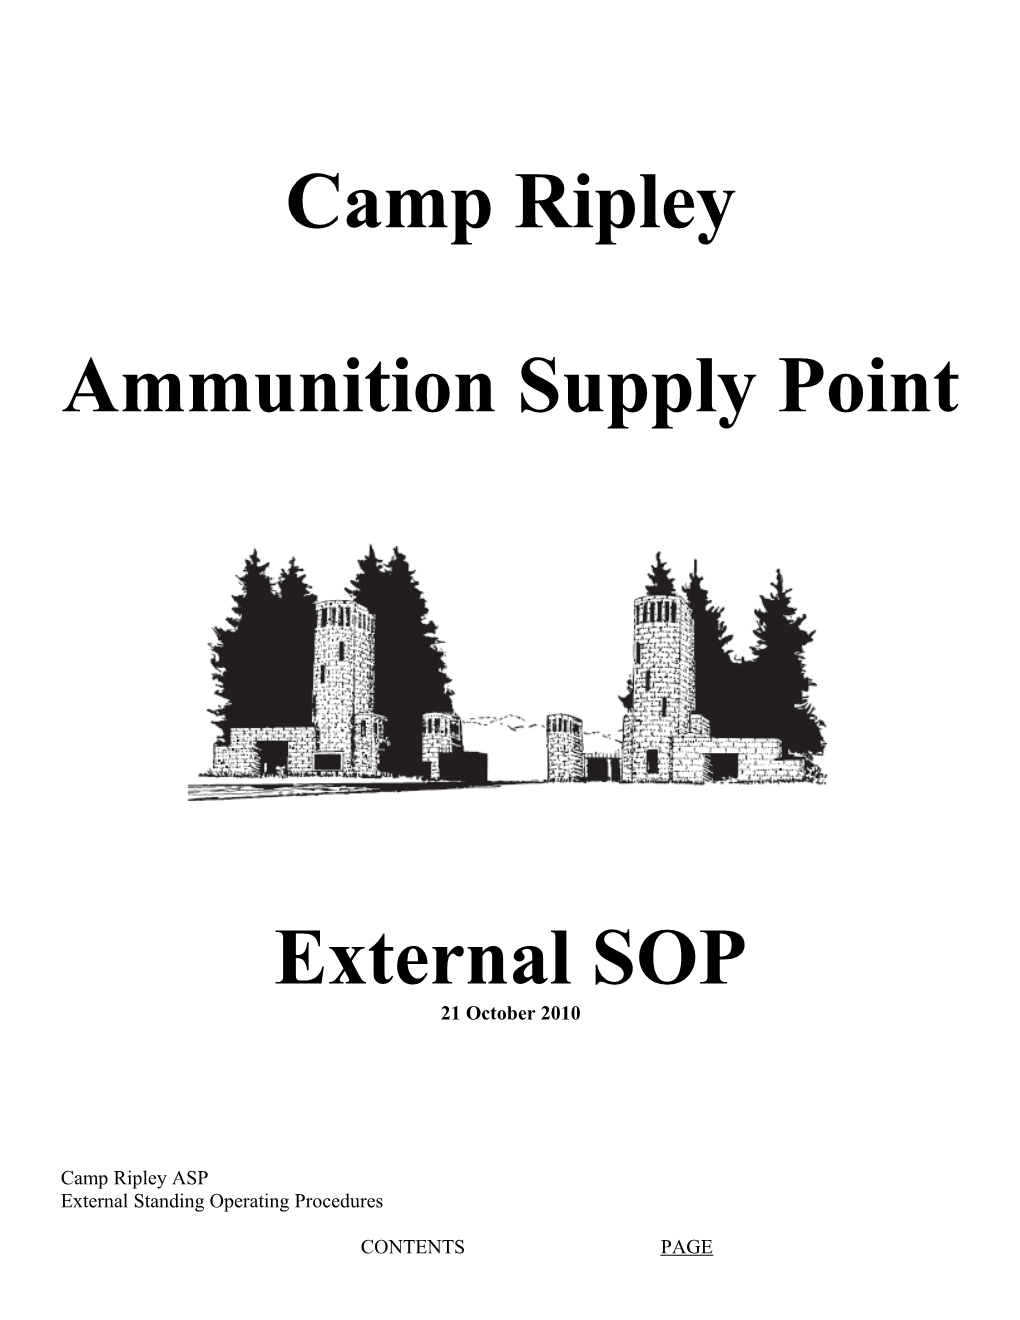 Camp Ripely ASP